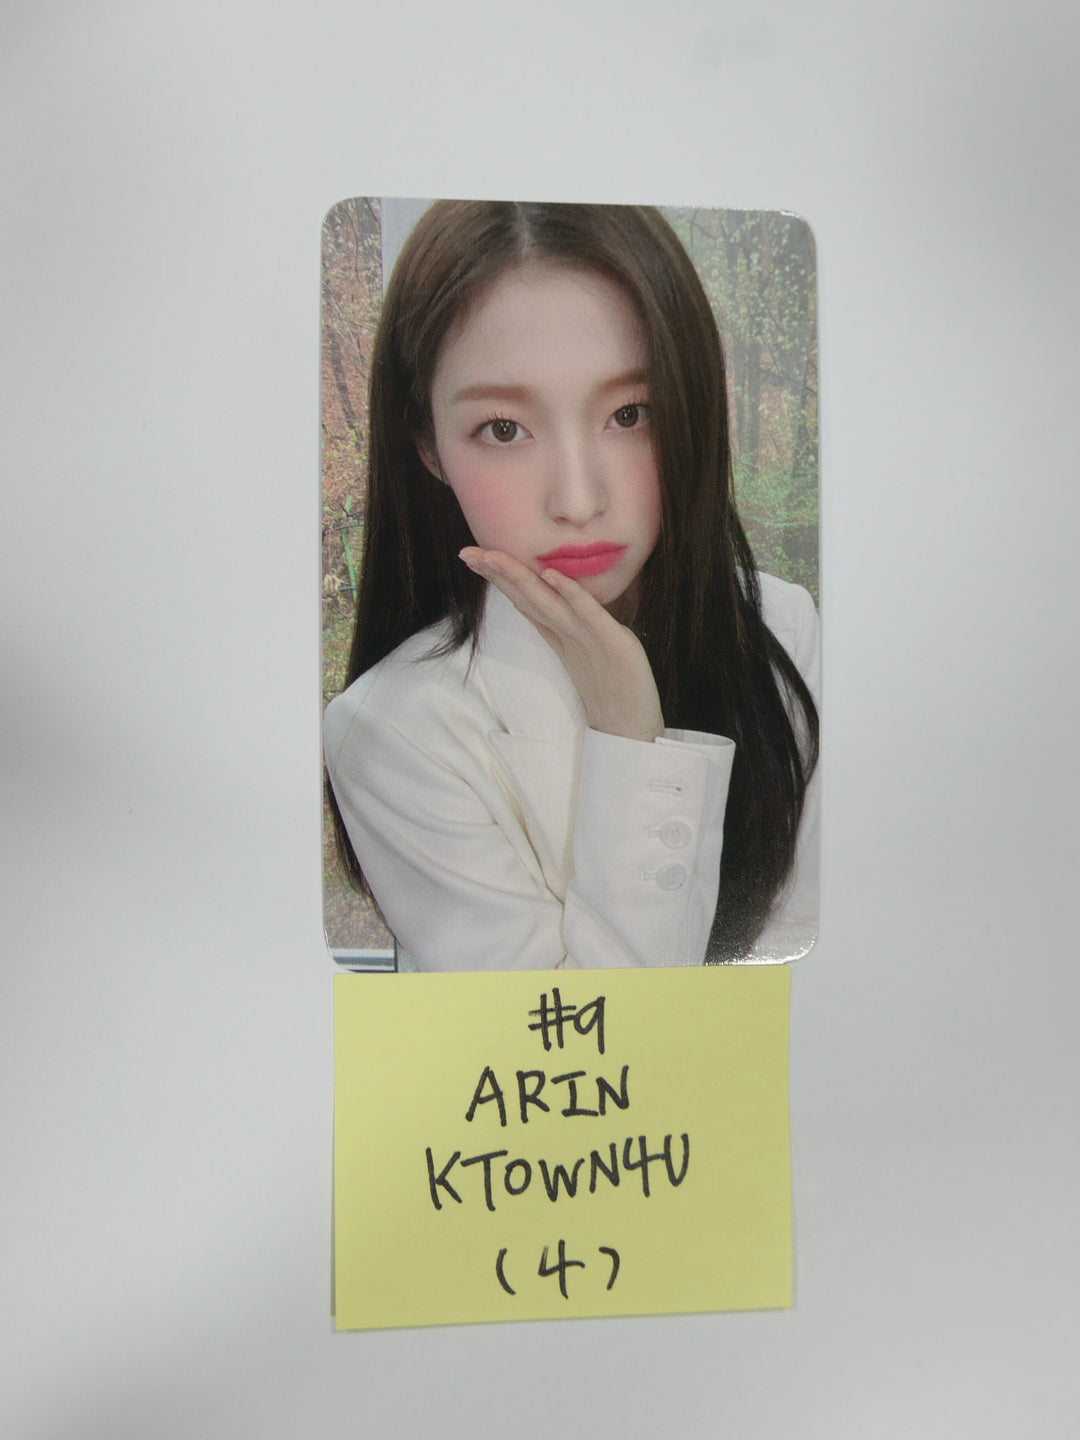 오마이걸 "던던댄스" - Ktown4u 예약판매 포토카드